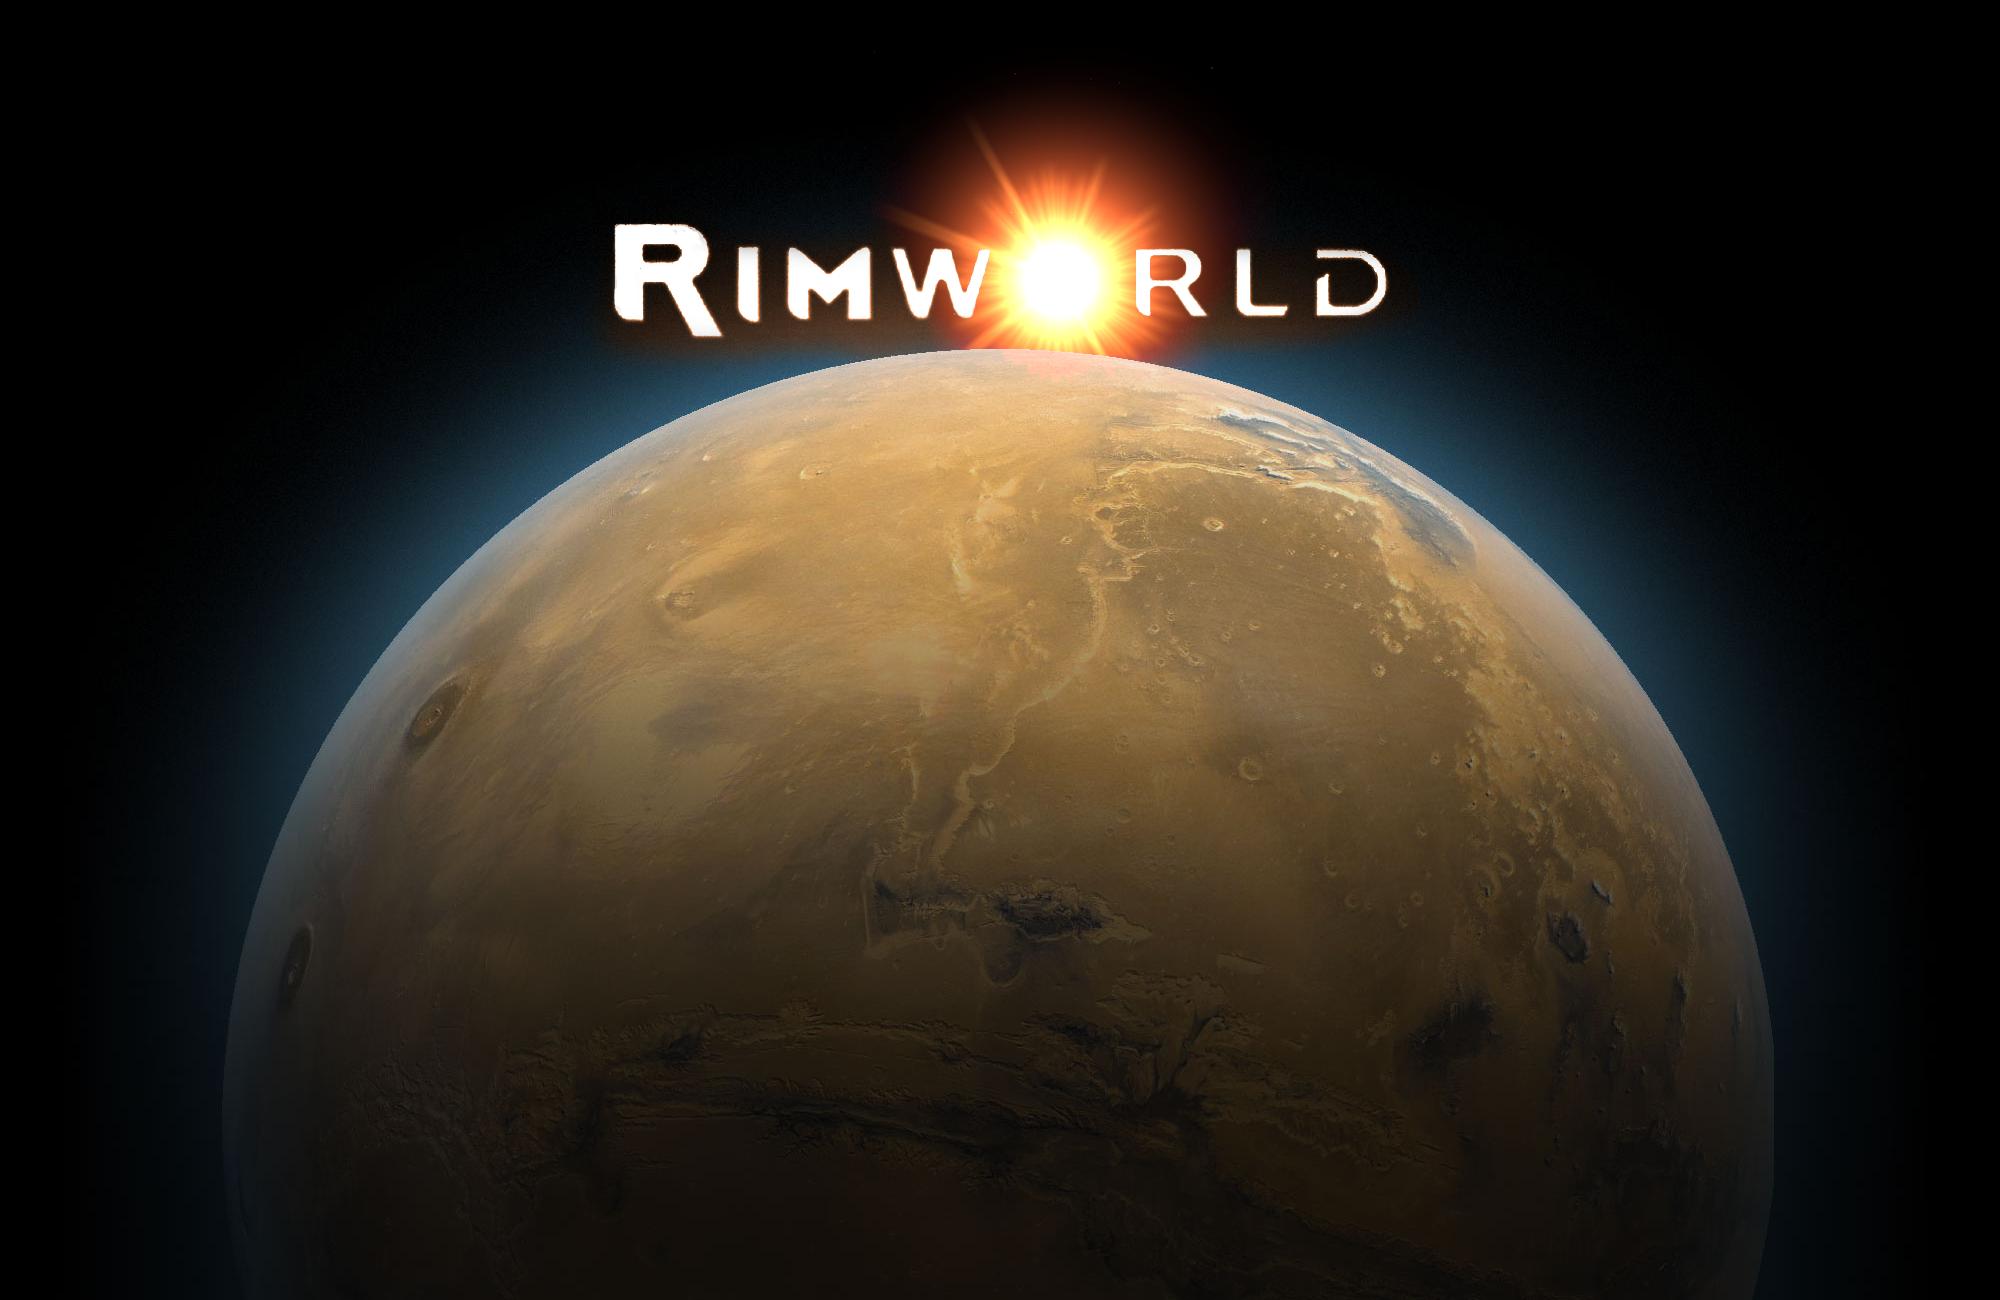 Скачать обои Rimworld на телефон бесплатно